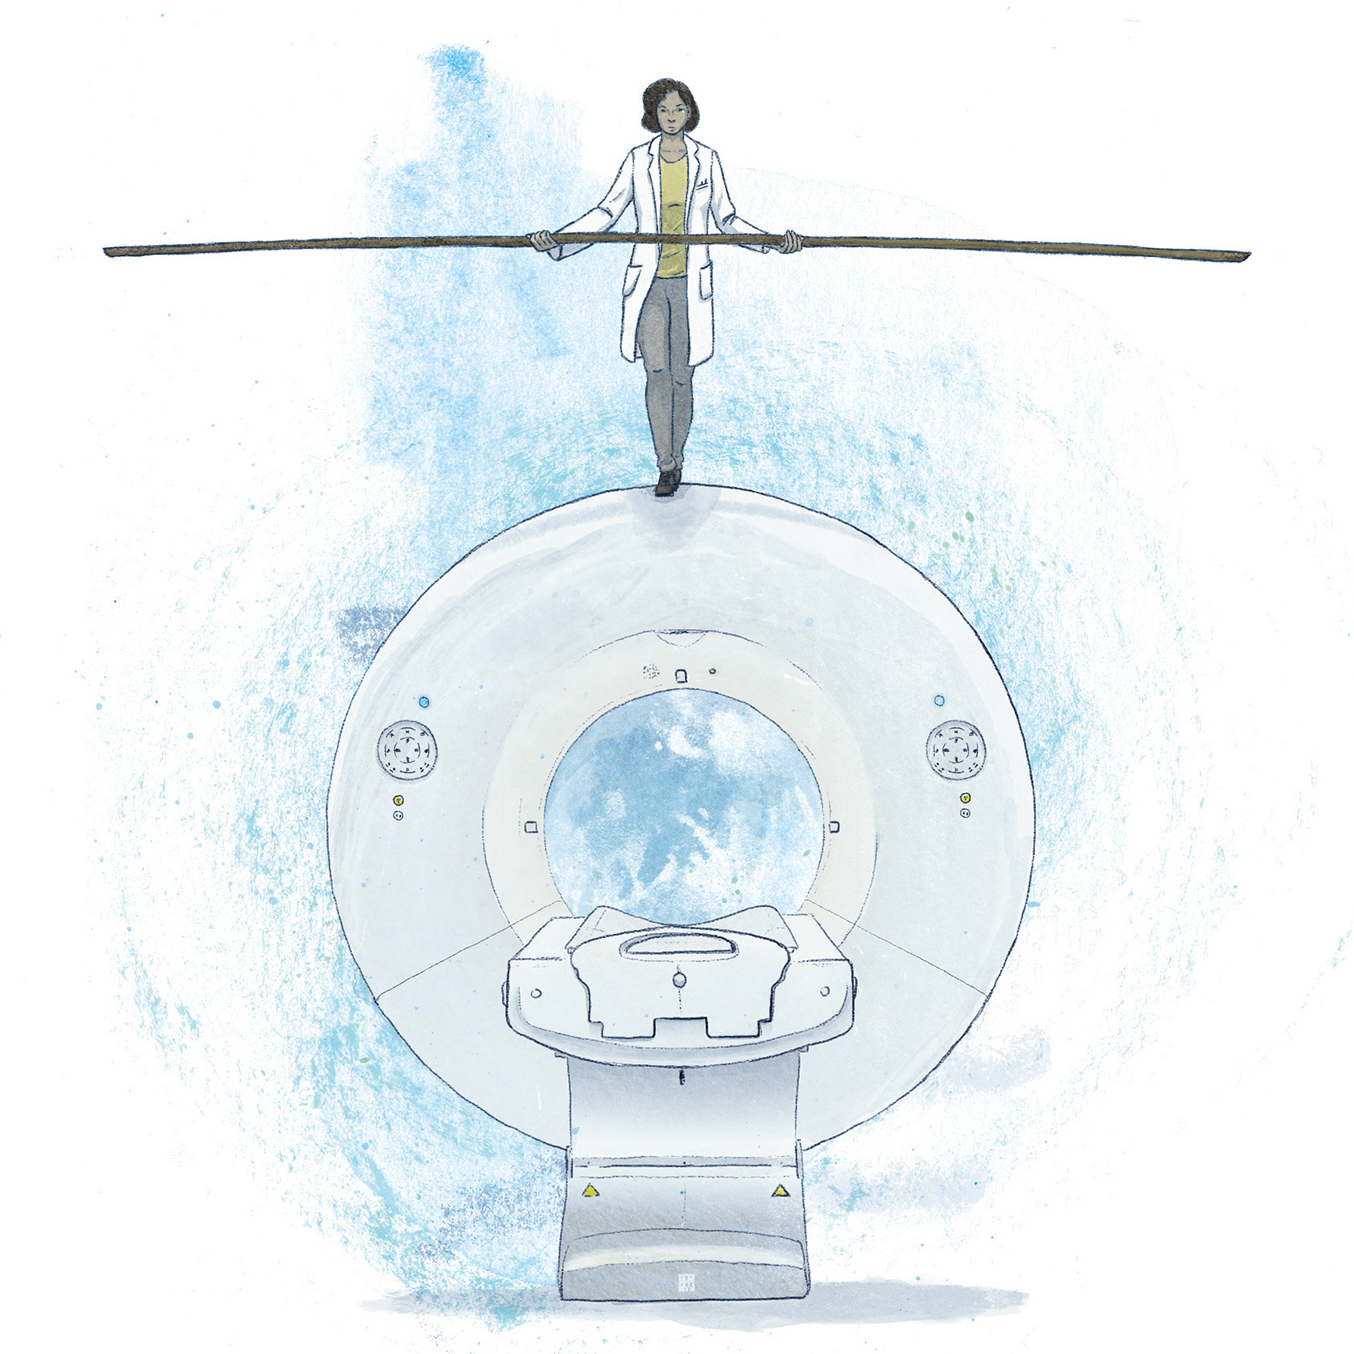 Symbolische illustratie (kleur) 'Bij welk trauma is een CT-scan echt noodzakelijk?'